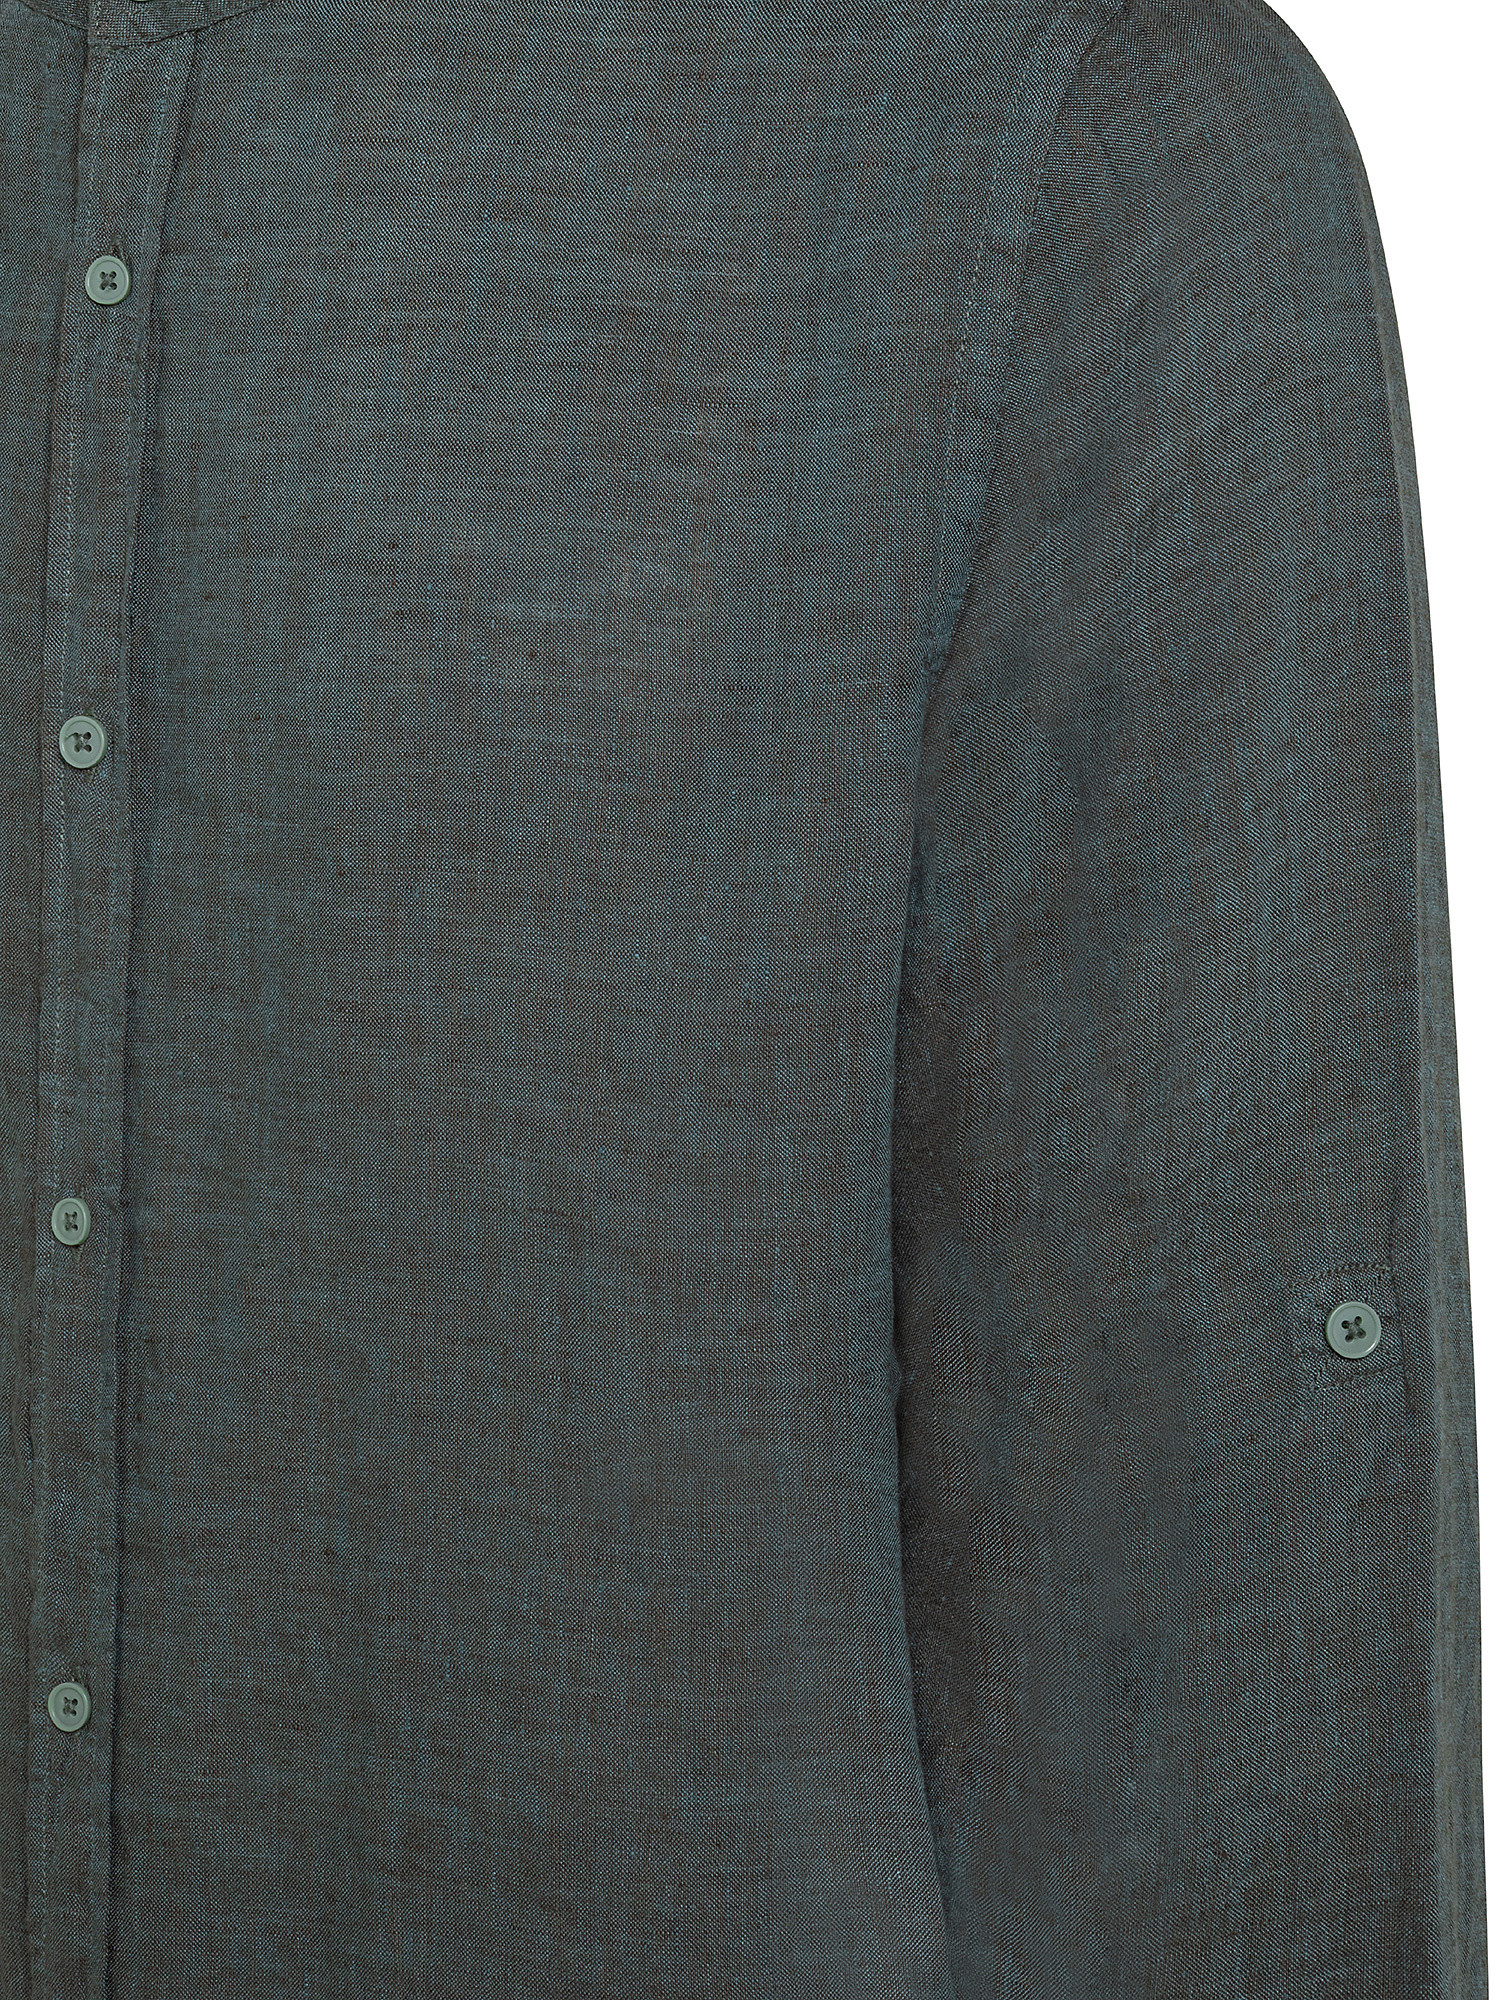 Camicia puro lino collo coreana, Verde, large